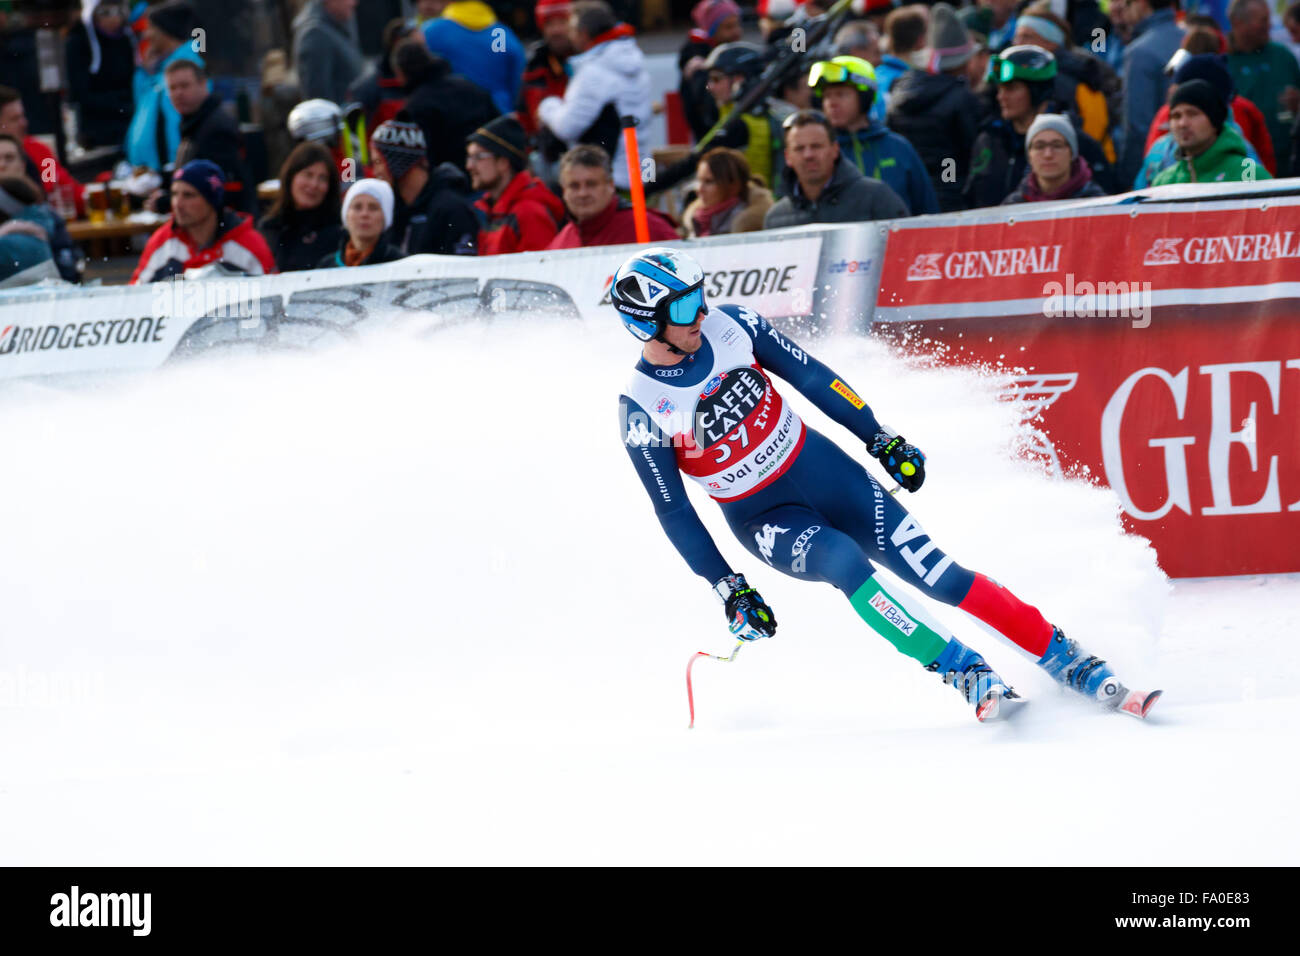 La Val Gardena, Italia 18 dicembre 2015. Tallone Werner (Ita) competere nel Audi FIS Coppa del Mondo di Sci Alpino Super-G gara Foto Stock